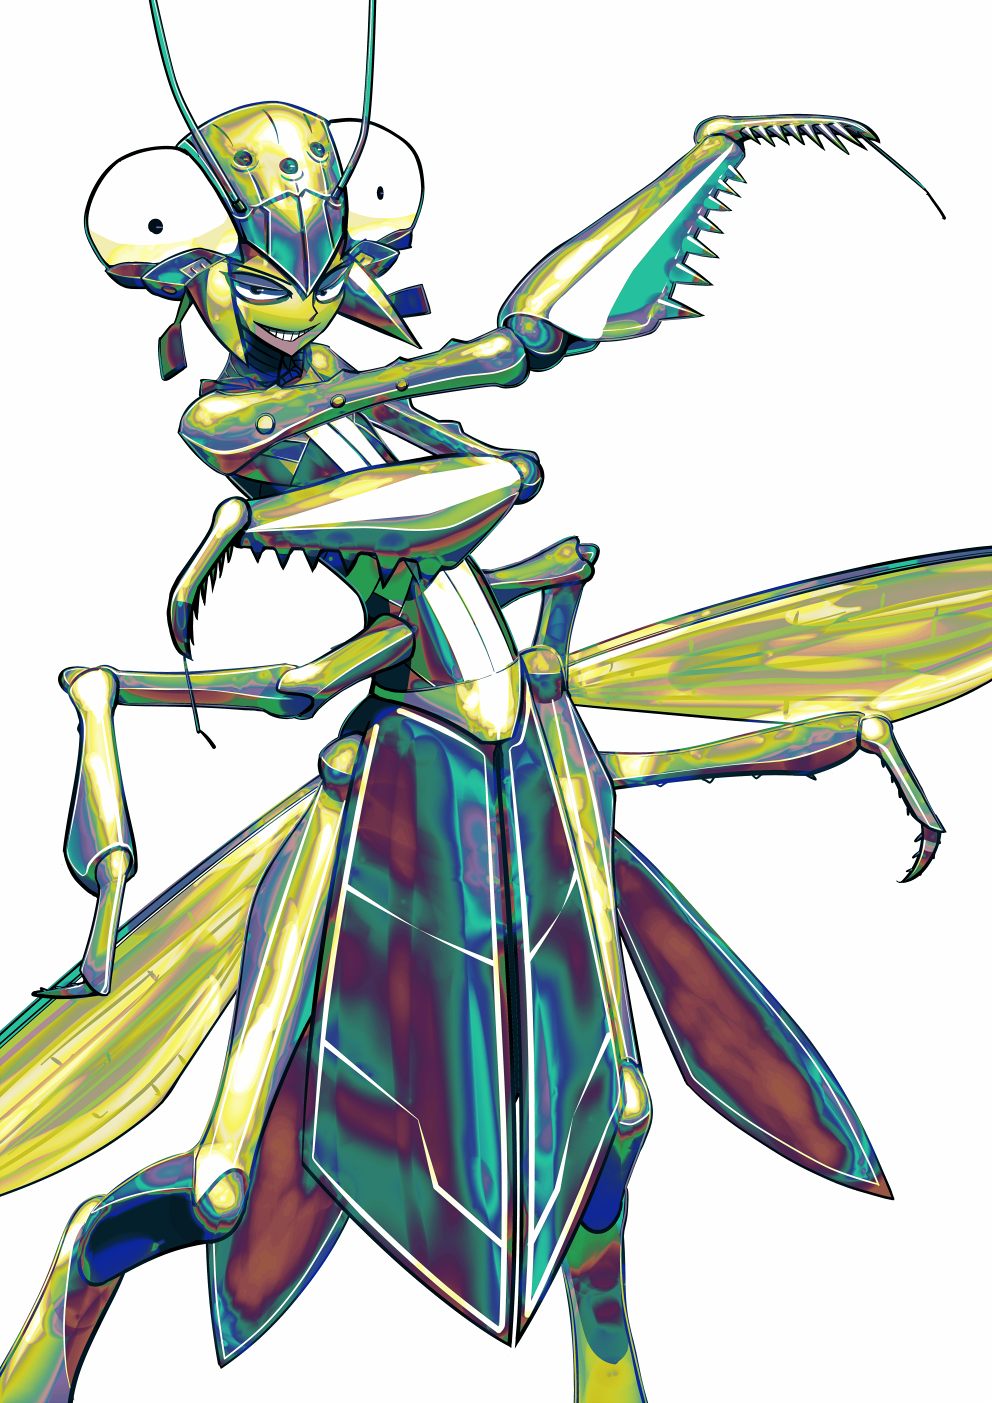 Богомол Monster girl Insectoid. Мантис богомол. Богомолы Мантис жёлтый. Инсектоид Жук богомол.